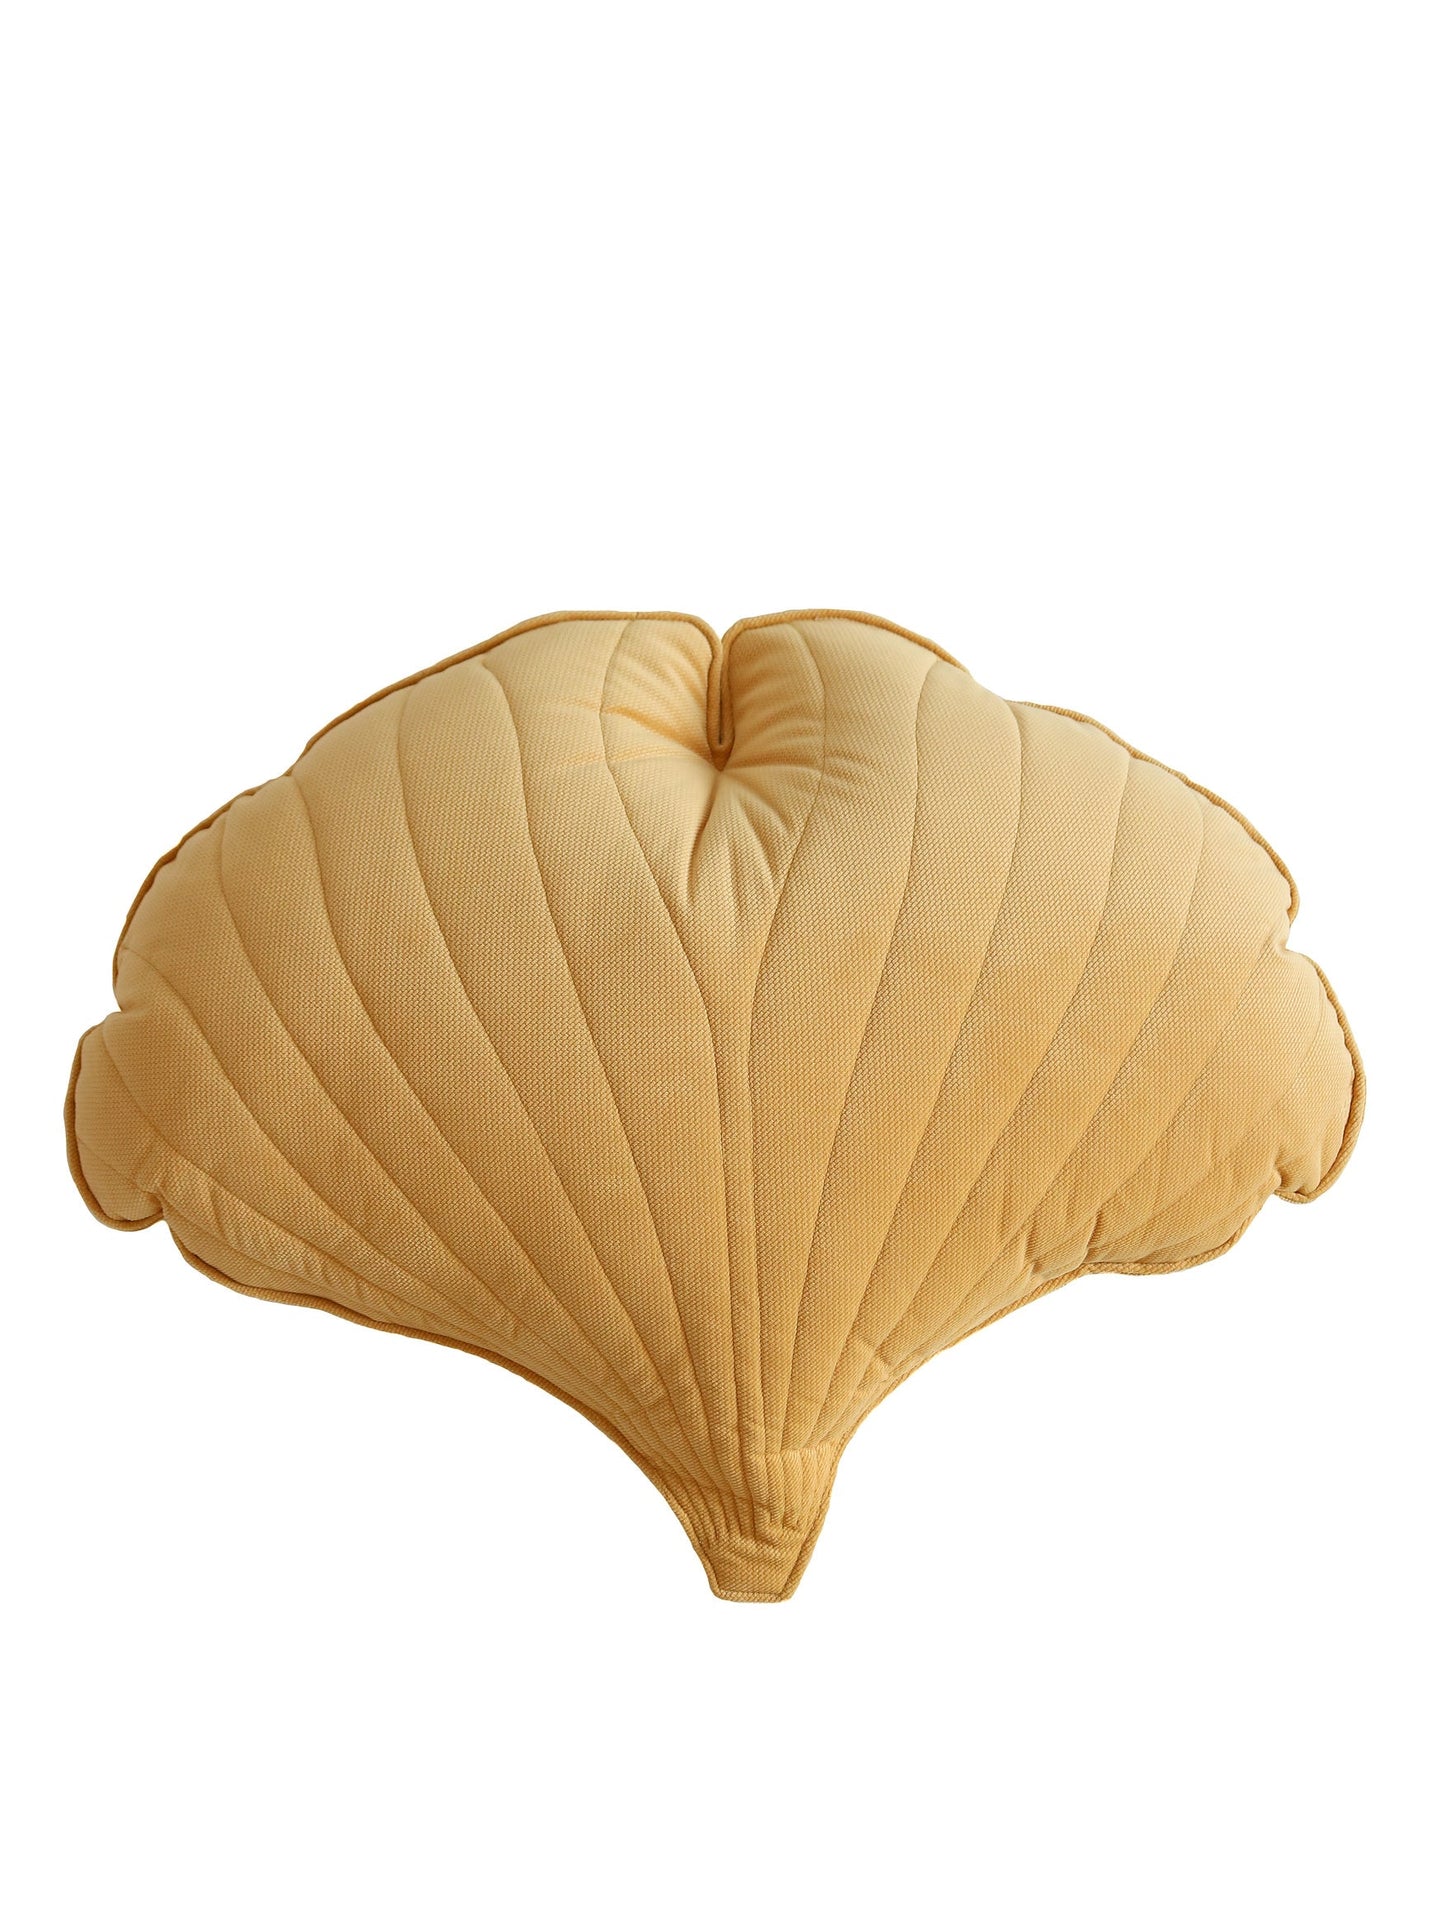 Velvet “Honey” Ginkgo Leaf Pillow